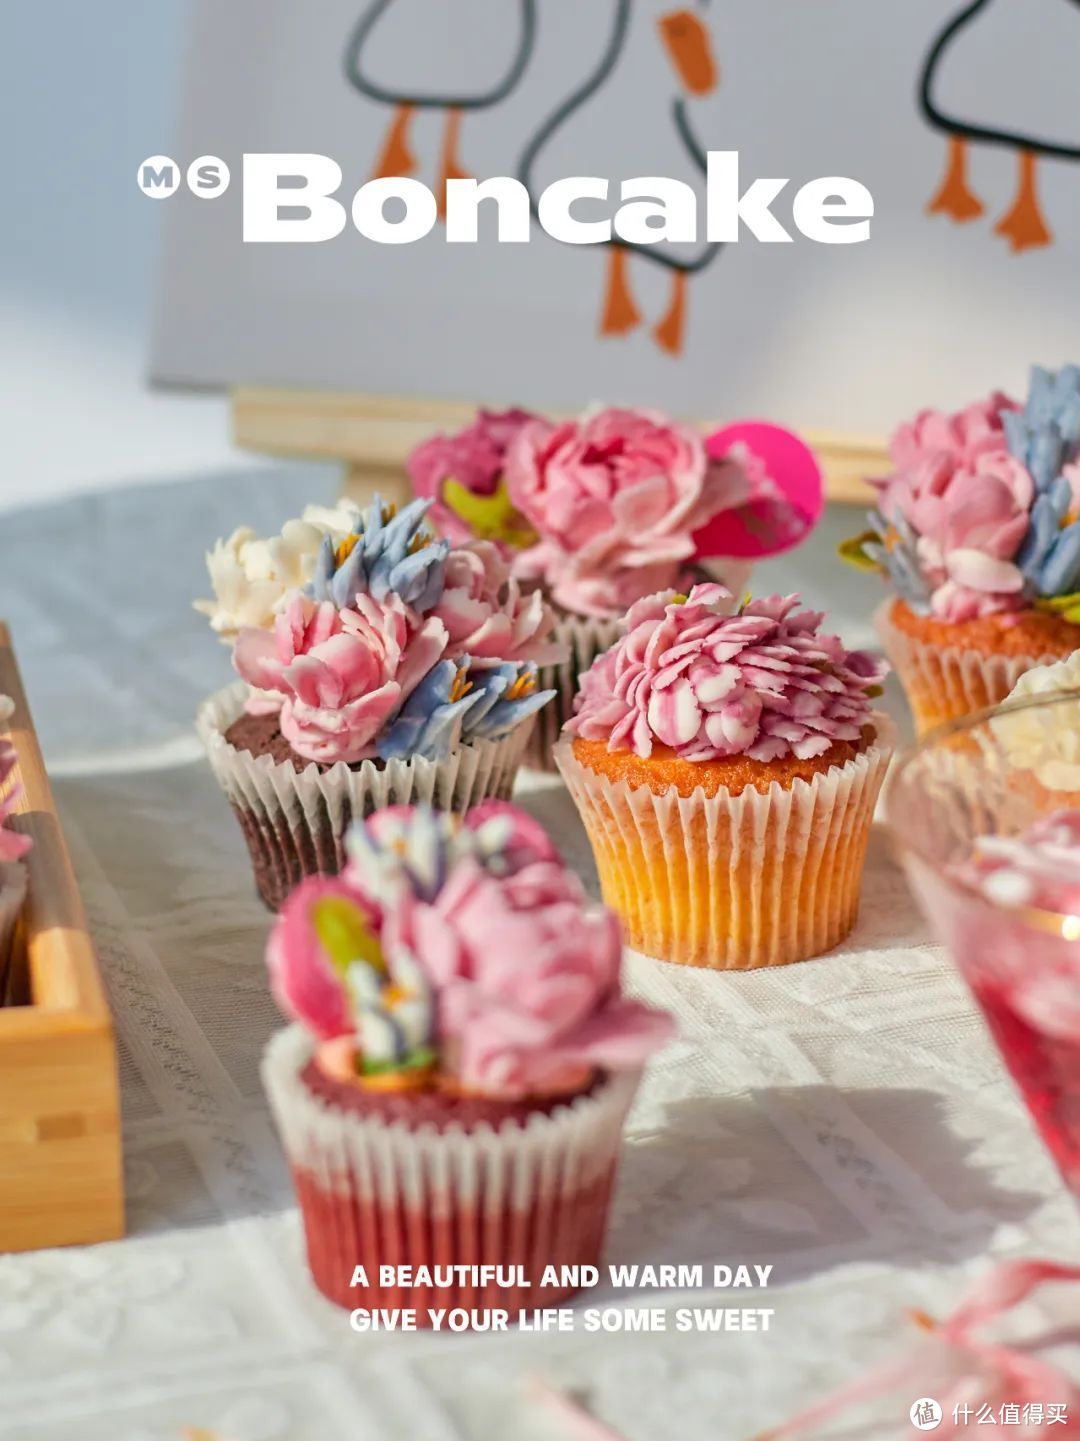 「BON CAKE」创始人7问：不止于高颜值，更想让“每个人的生活中多一点甜”